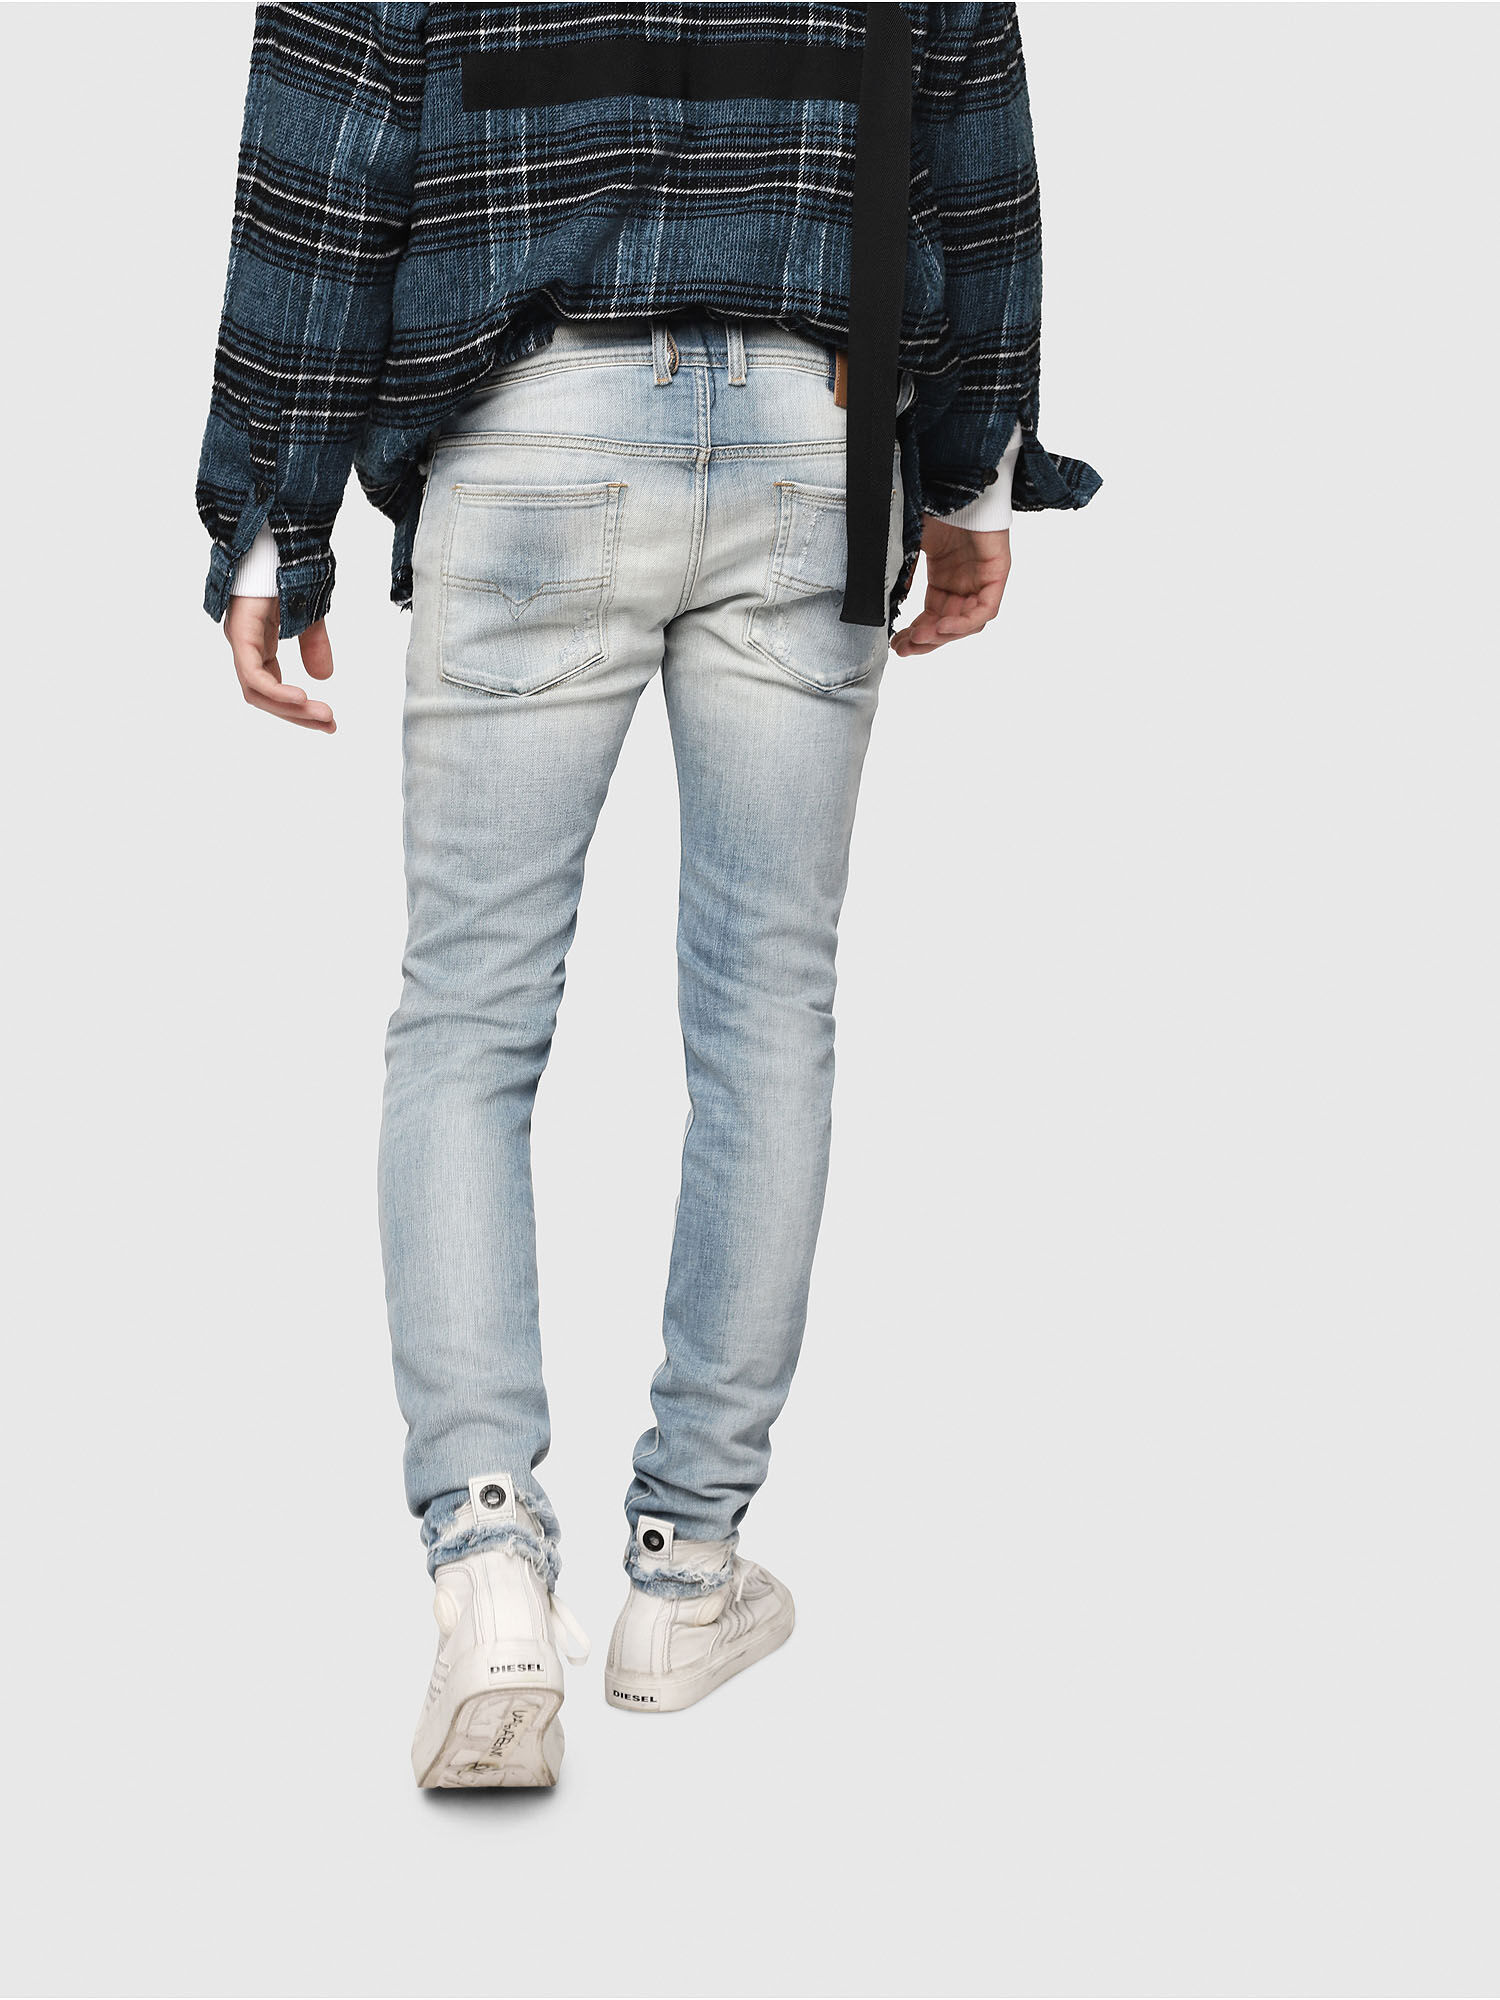 calça jeans masculina numero 38